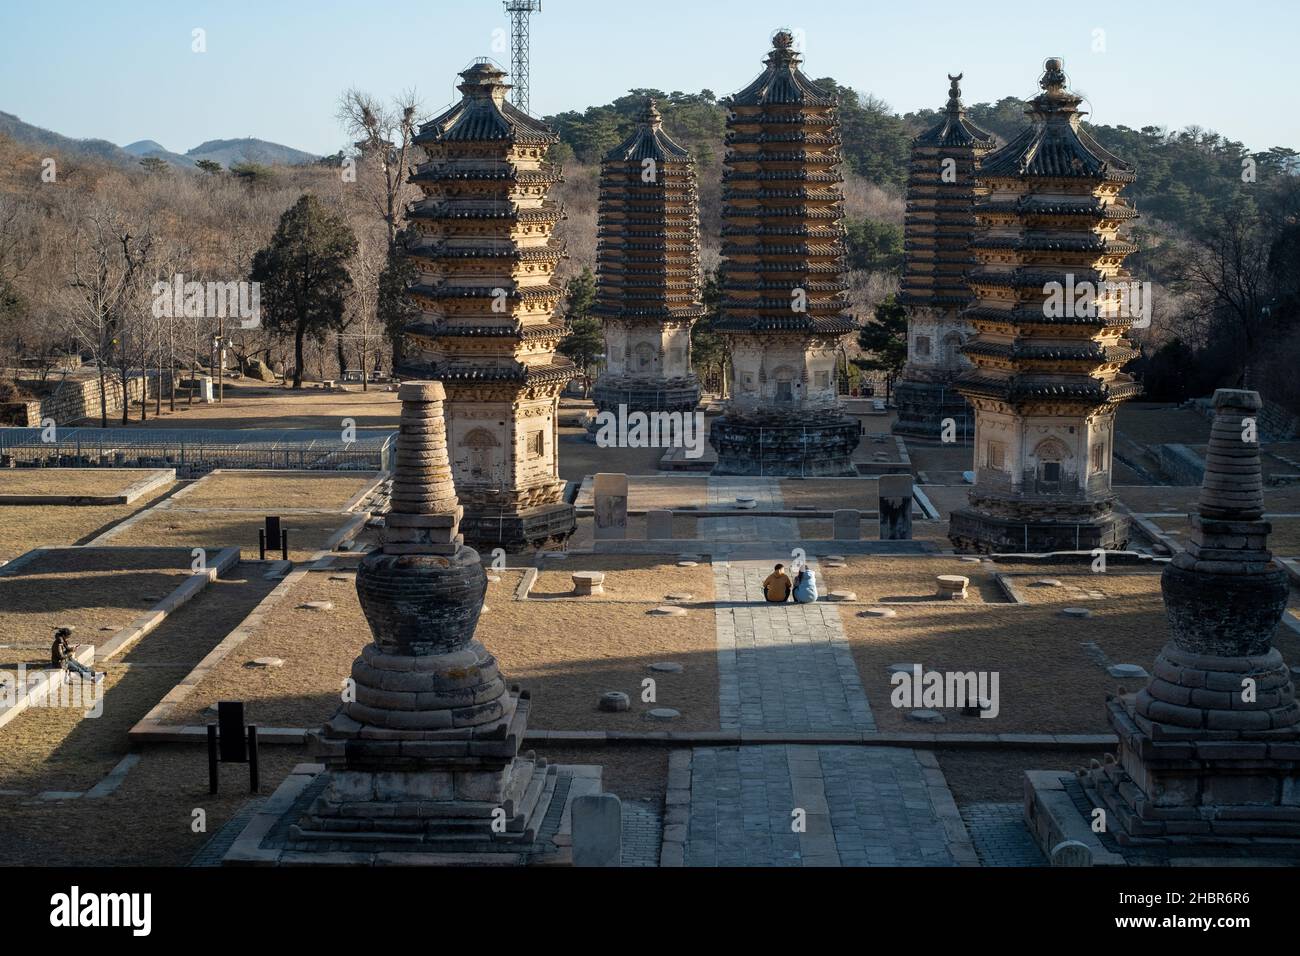 Yinshan Talin (Yinshan Pagoda park) in Yanshou Town, Changping District, Beijing, China. Stock Photo